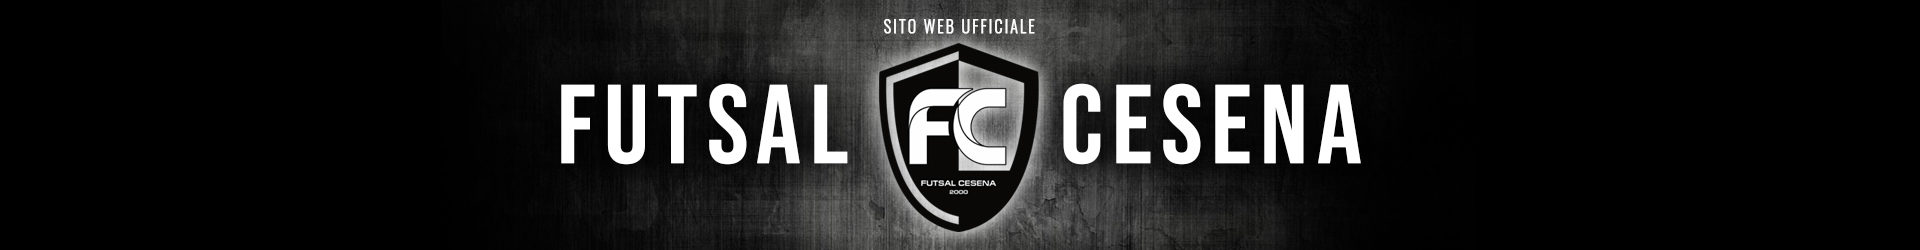 PRE PARTITA: Futsal Cesena-Gadtch 2000 (5a giornata)